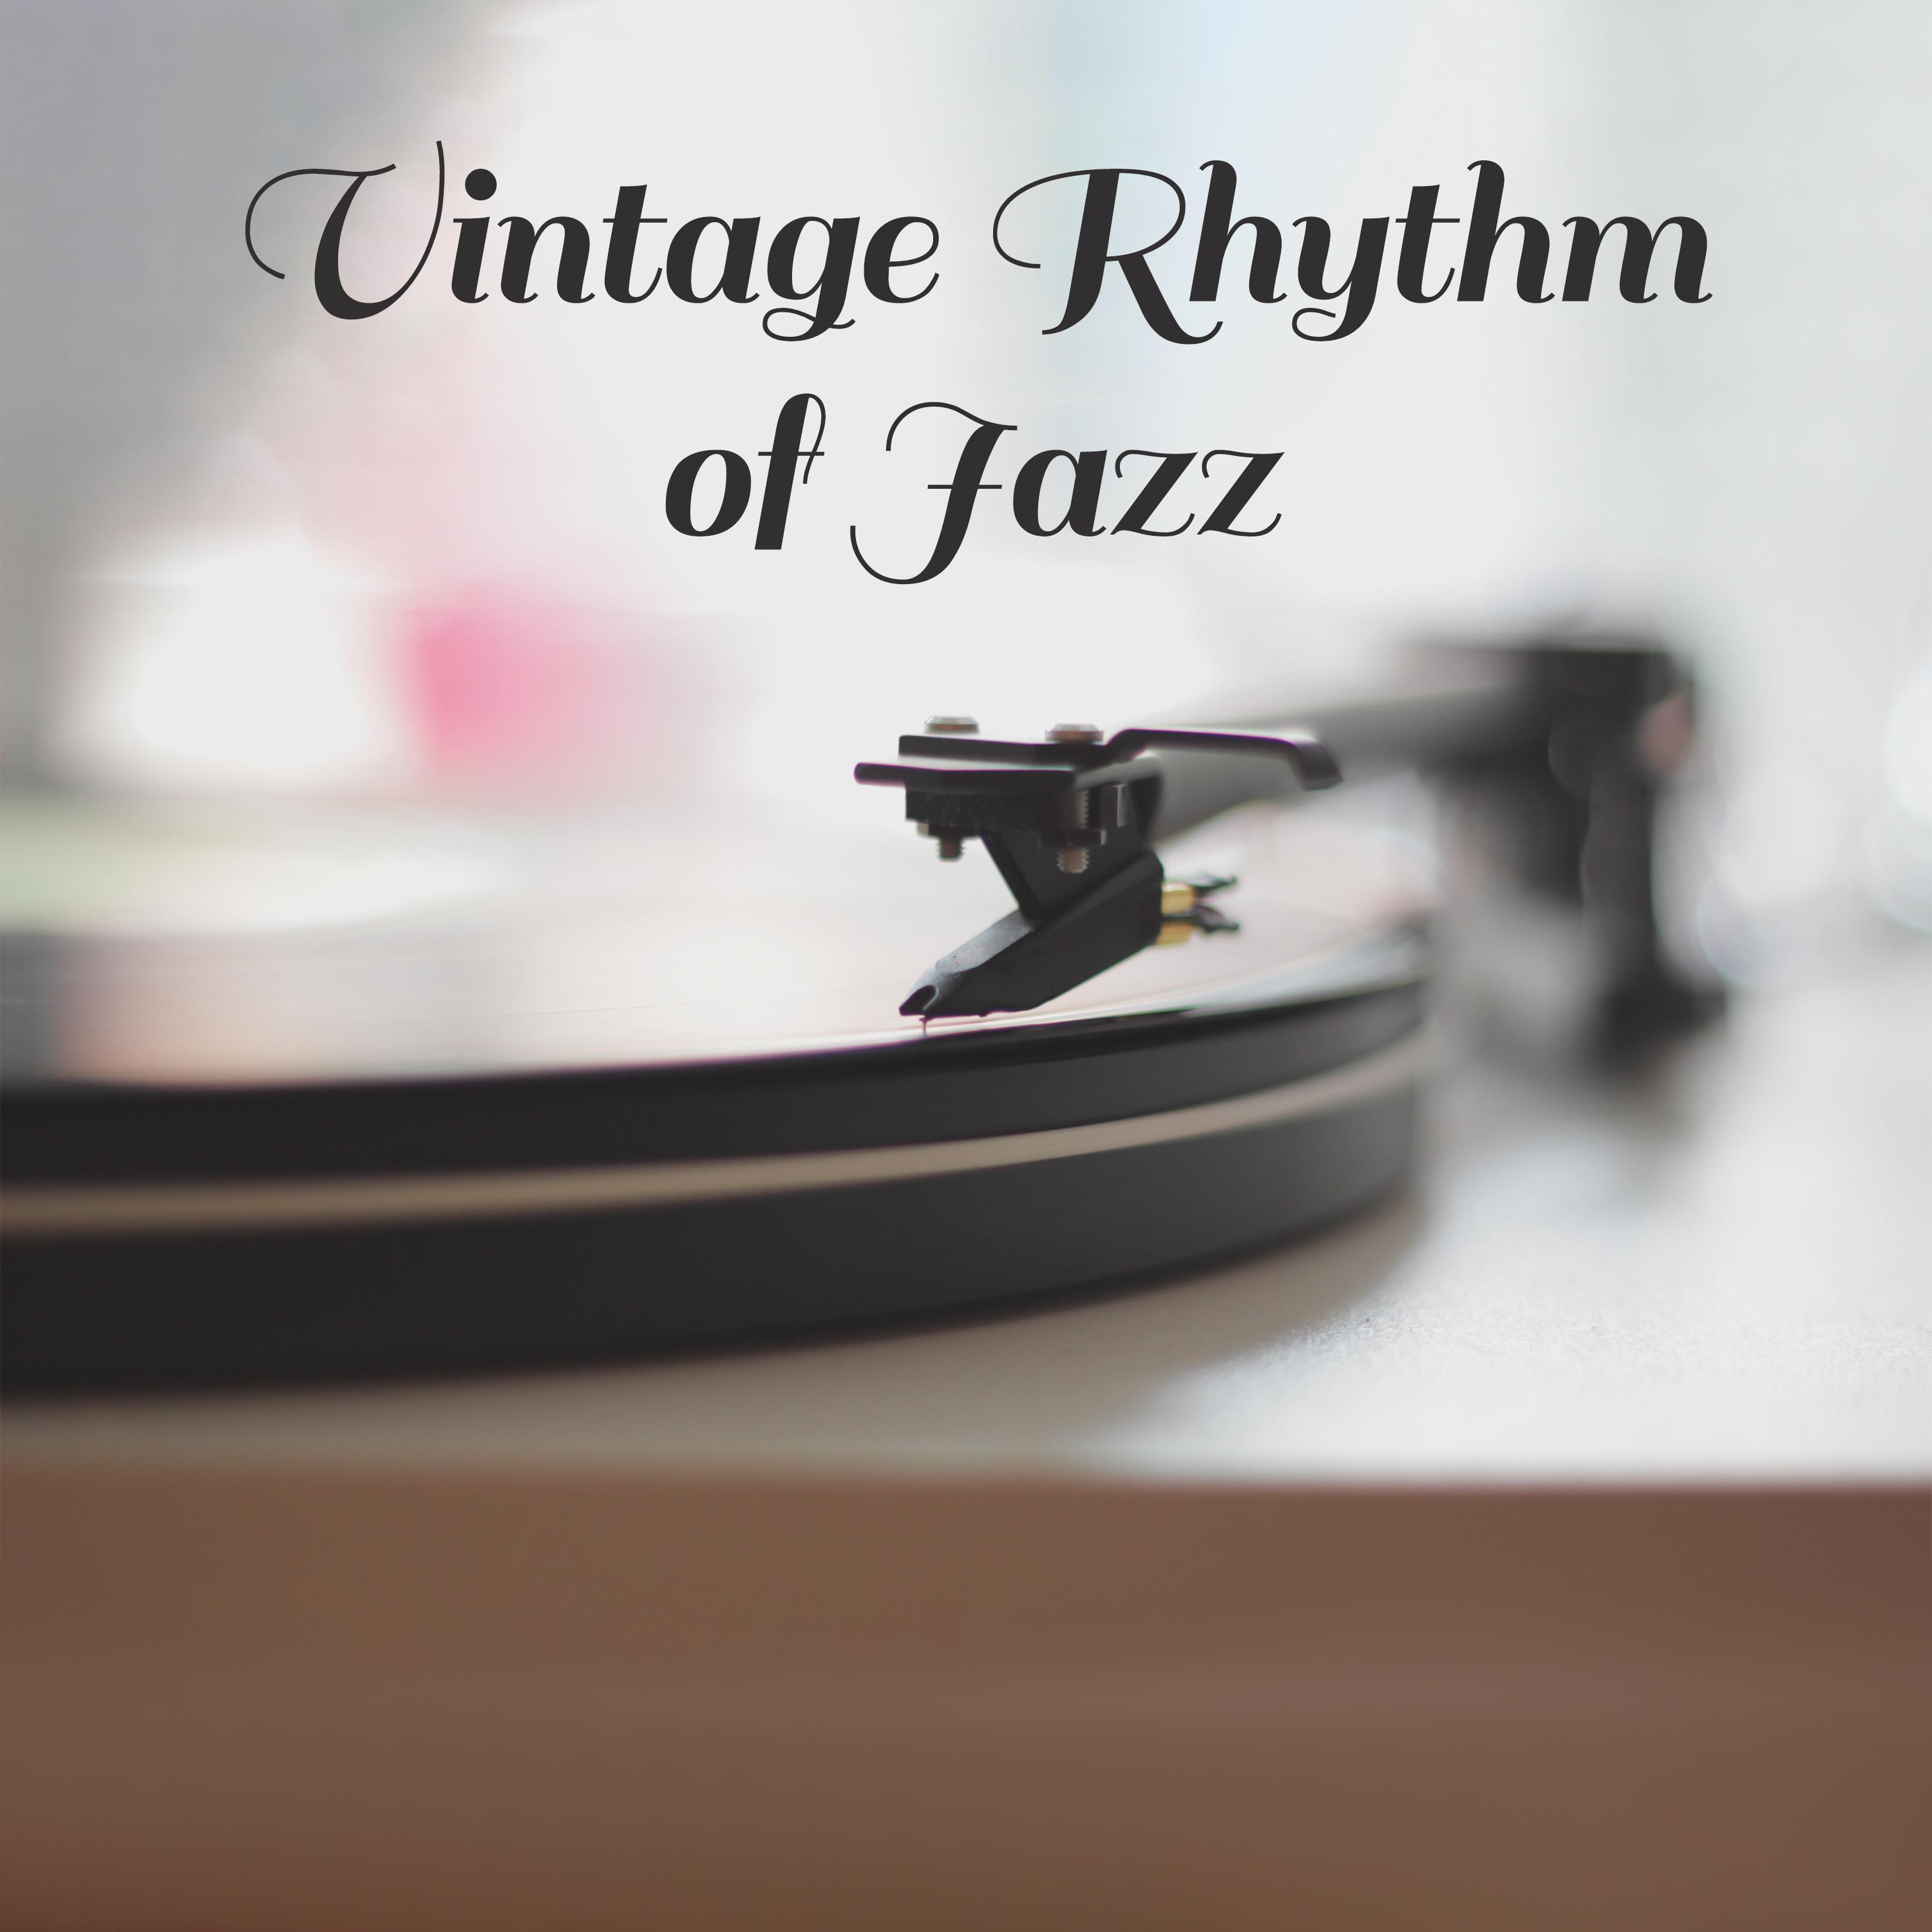 Vintage Rhythm of Jazz